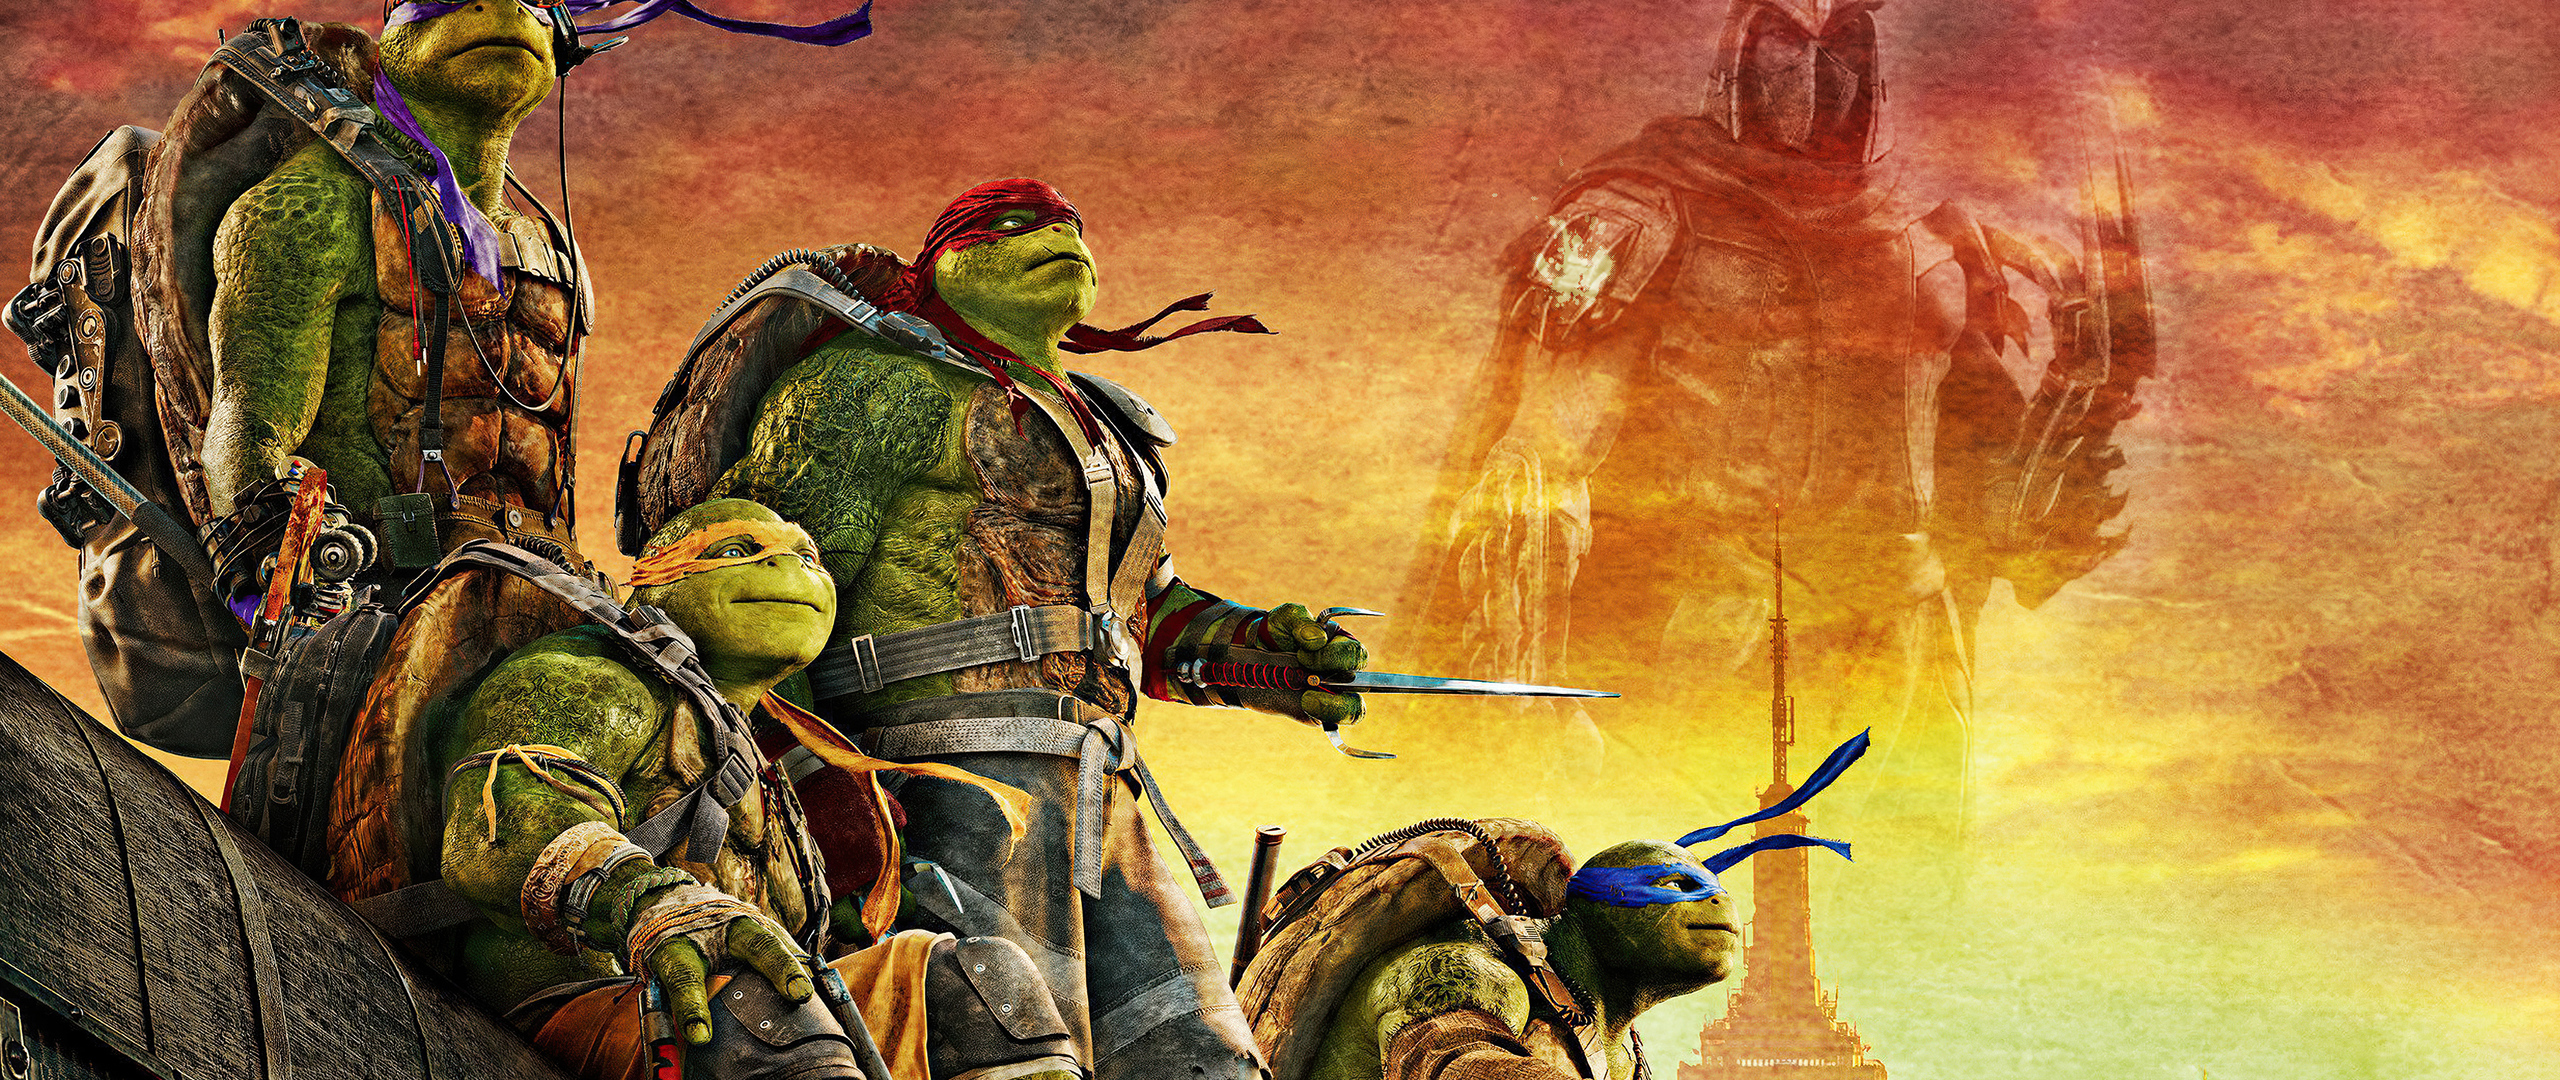 teenage-mutant-ninja-turtles-movie-poster-4k-ad.jpg